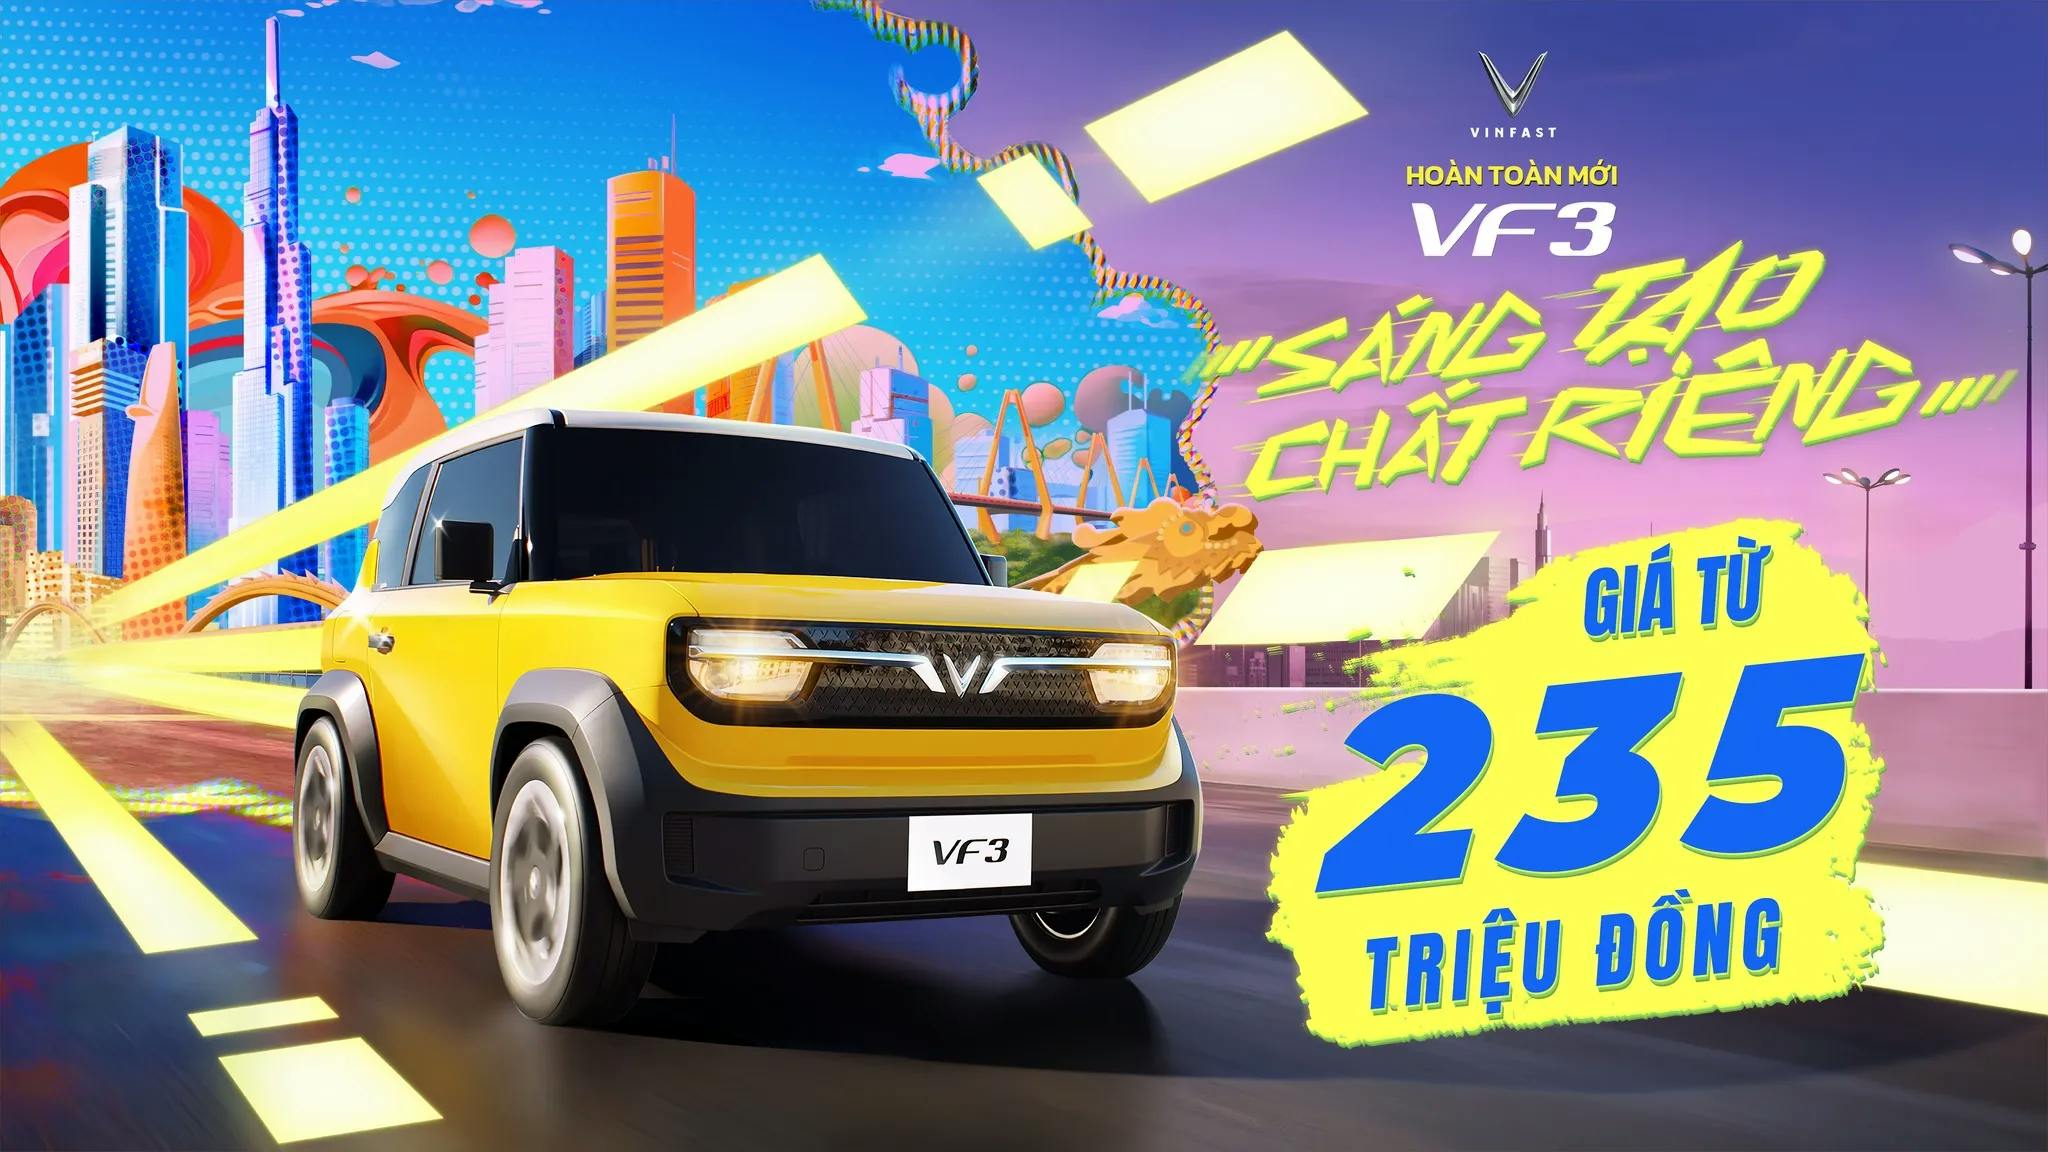 VinFast VF 3 nhận đặt hàng từ 235 triệu